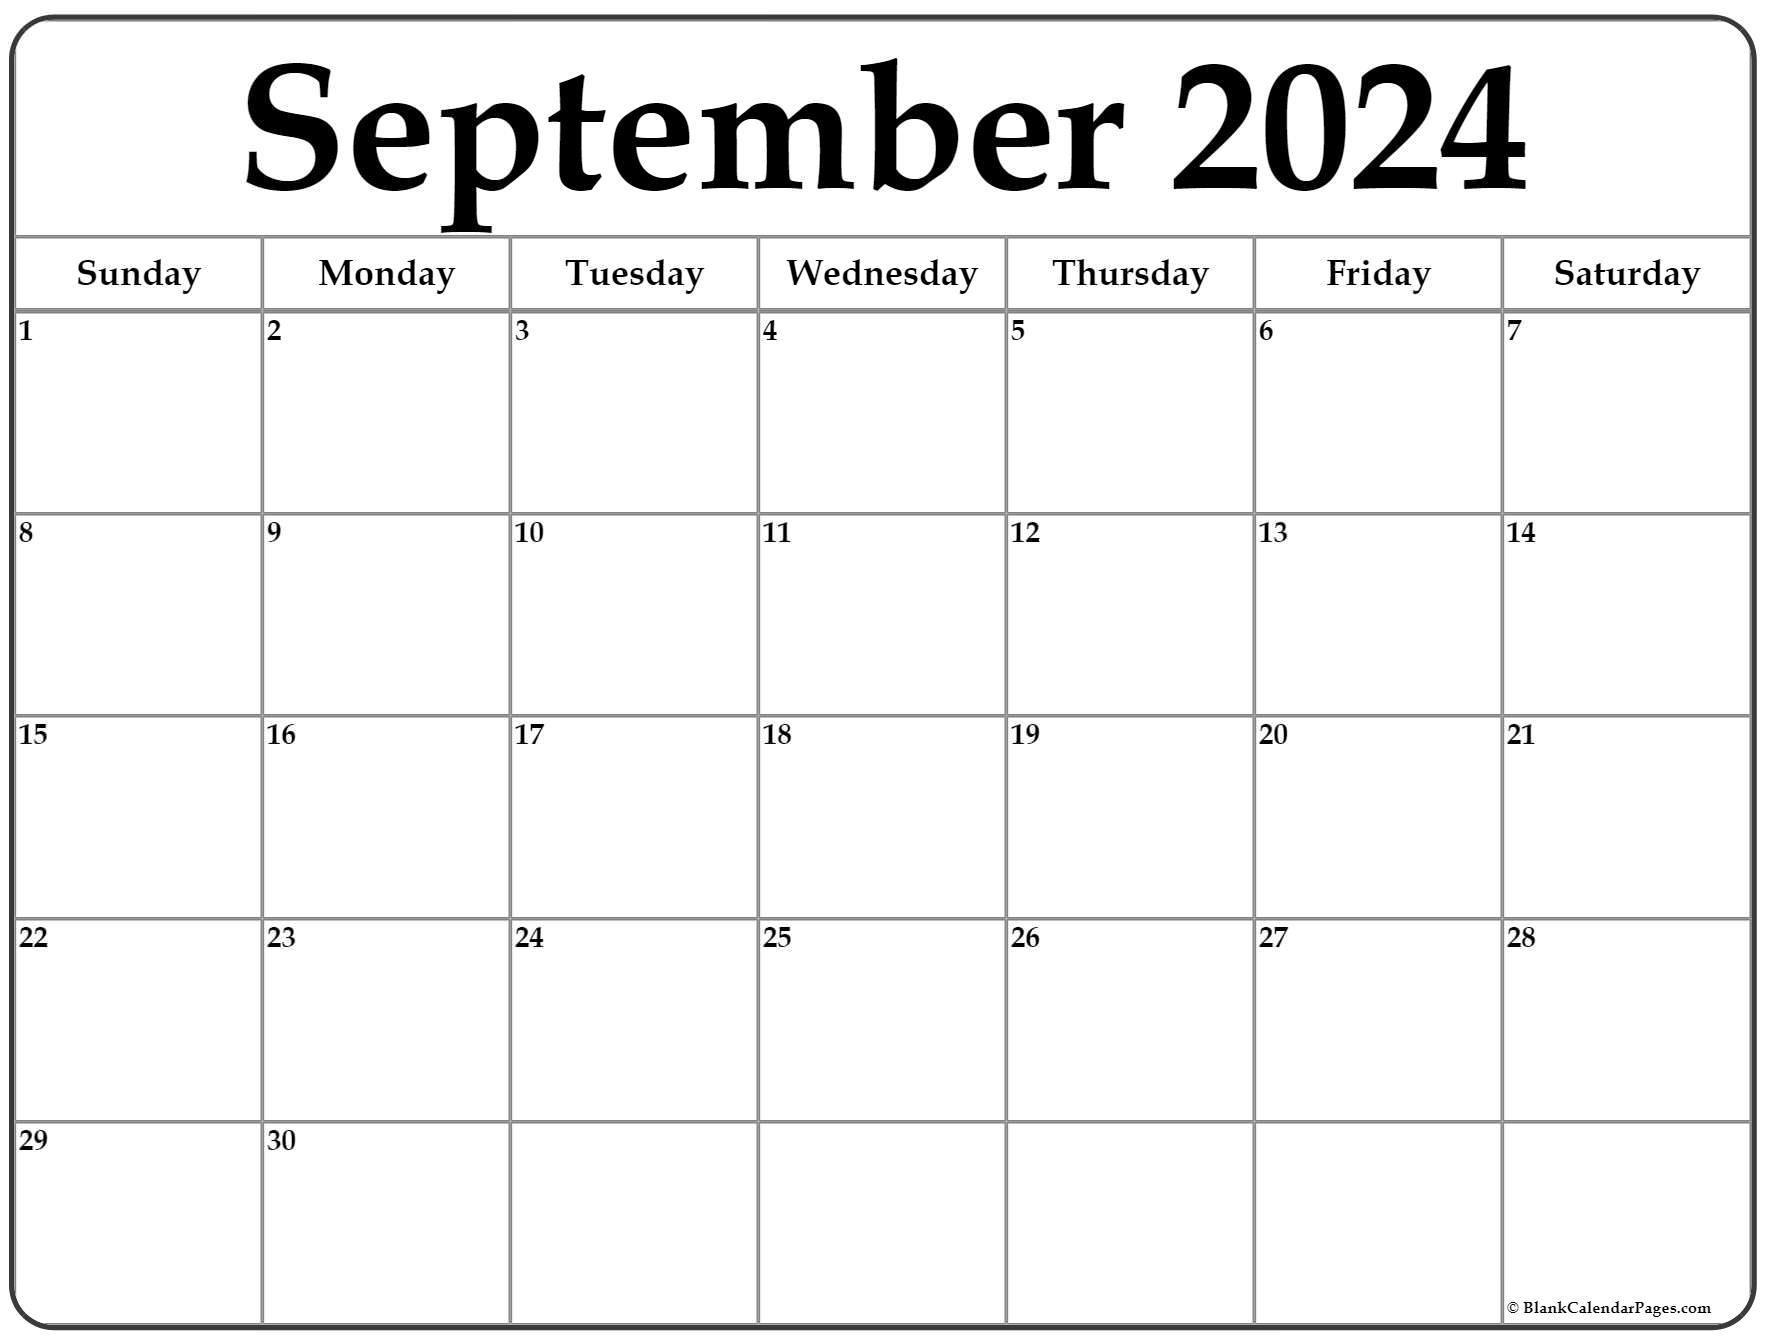 Monthly Calendar September 2022 Printable September 2022 Calendar | Free Printable Calendar Templates